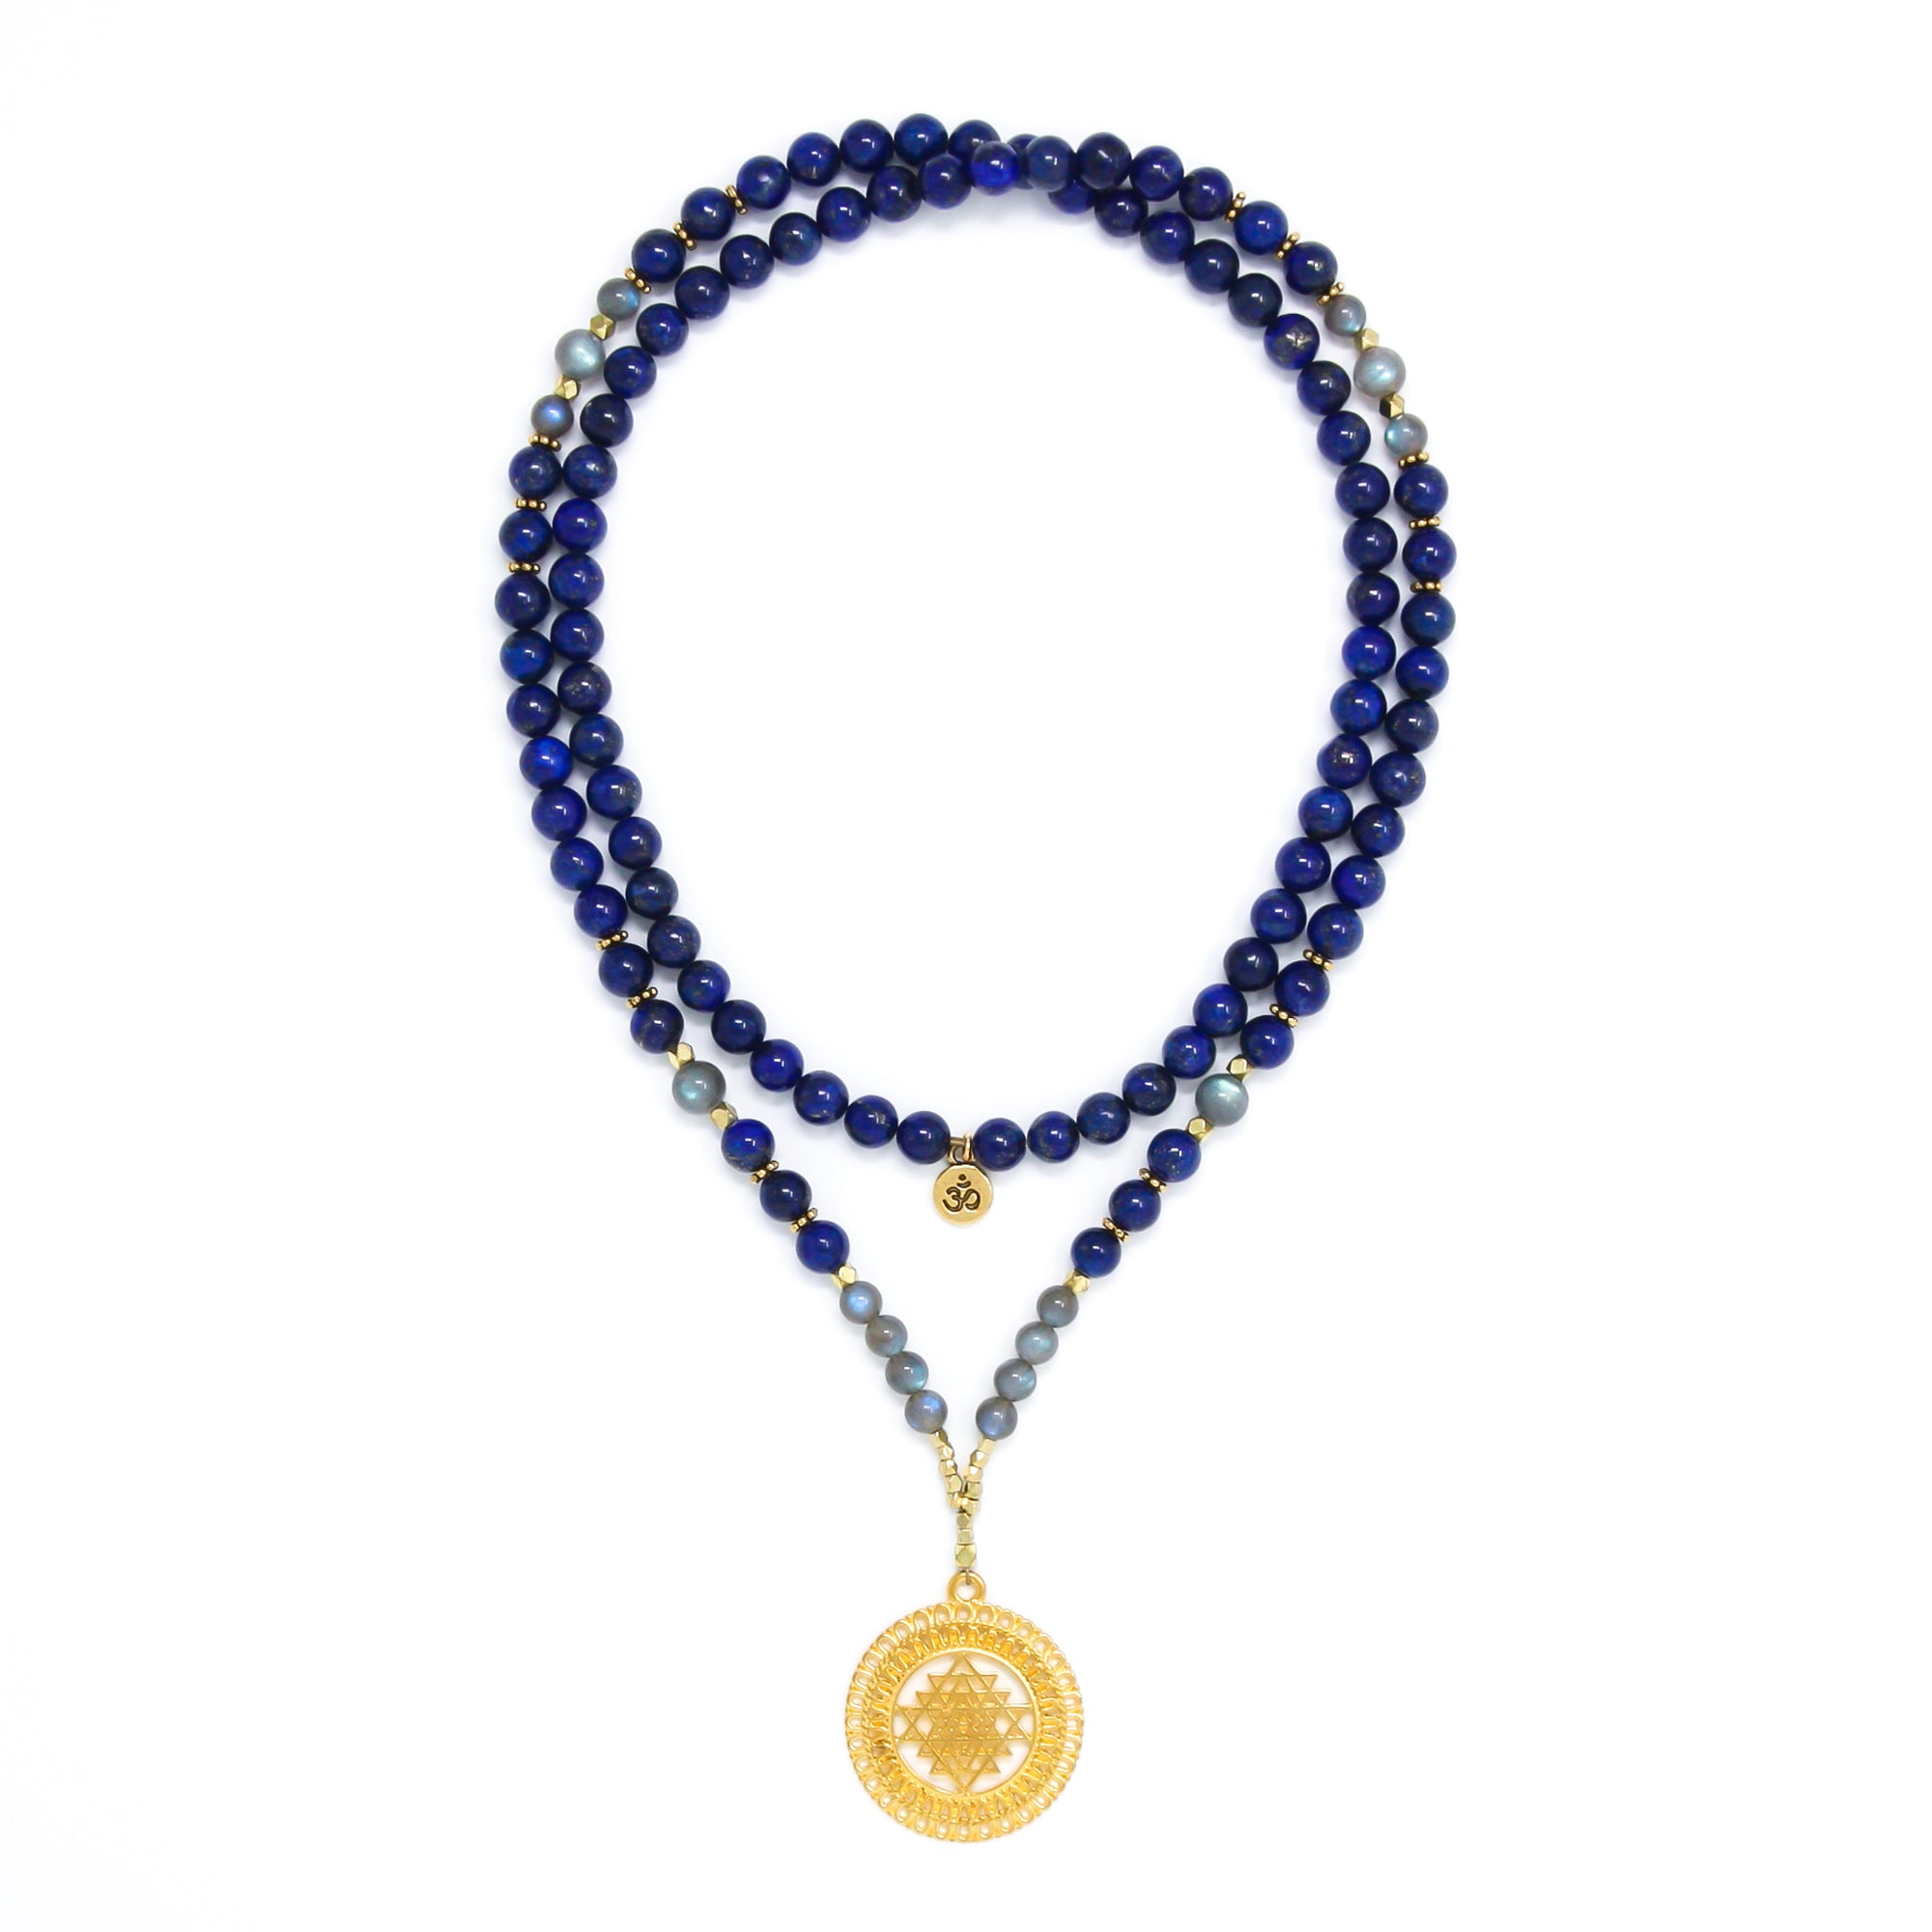 Lapis Lazuli and Labradorite Mala Necklace with Gold Sri Yantra Pendant, blue, gray and gold mala prayer beads, spiritual jewelry